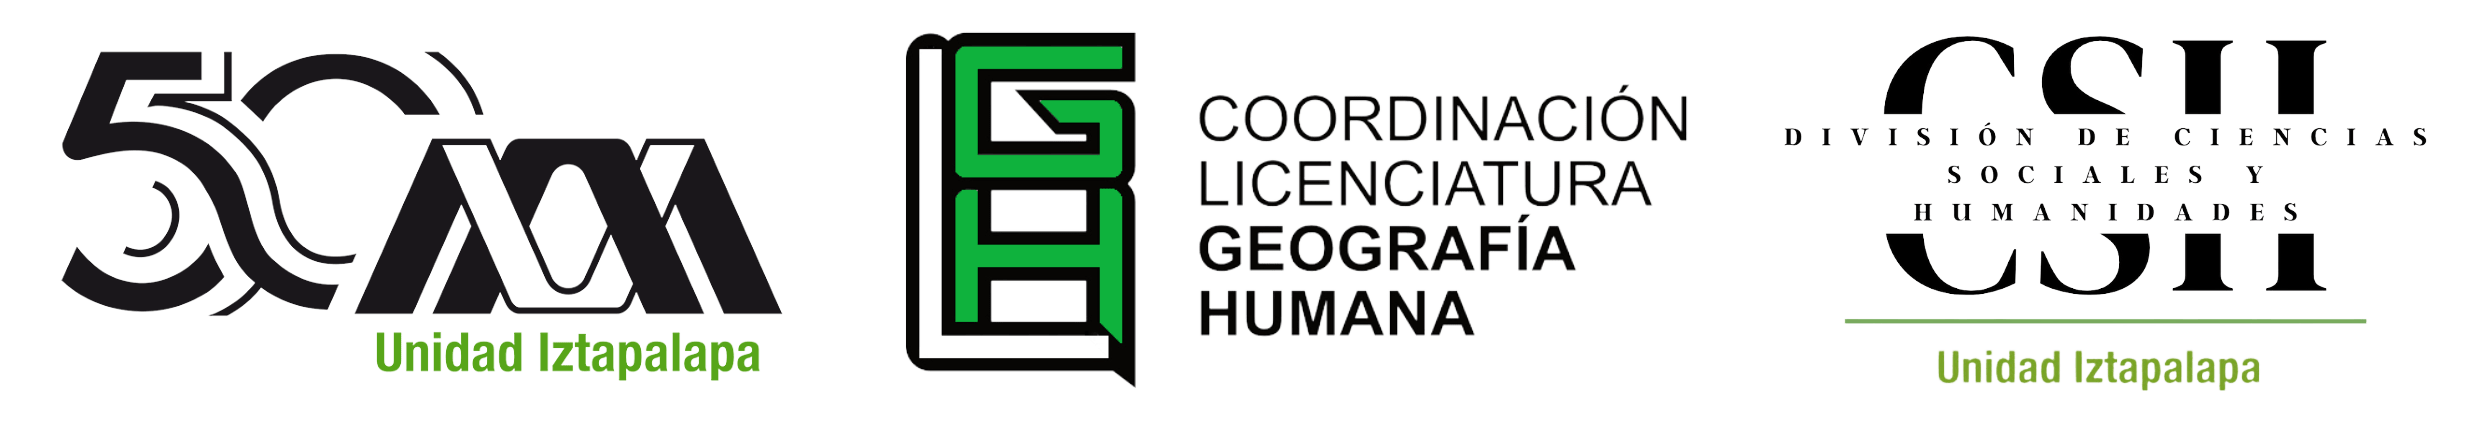 Licenciatura en Geografía Humana